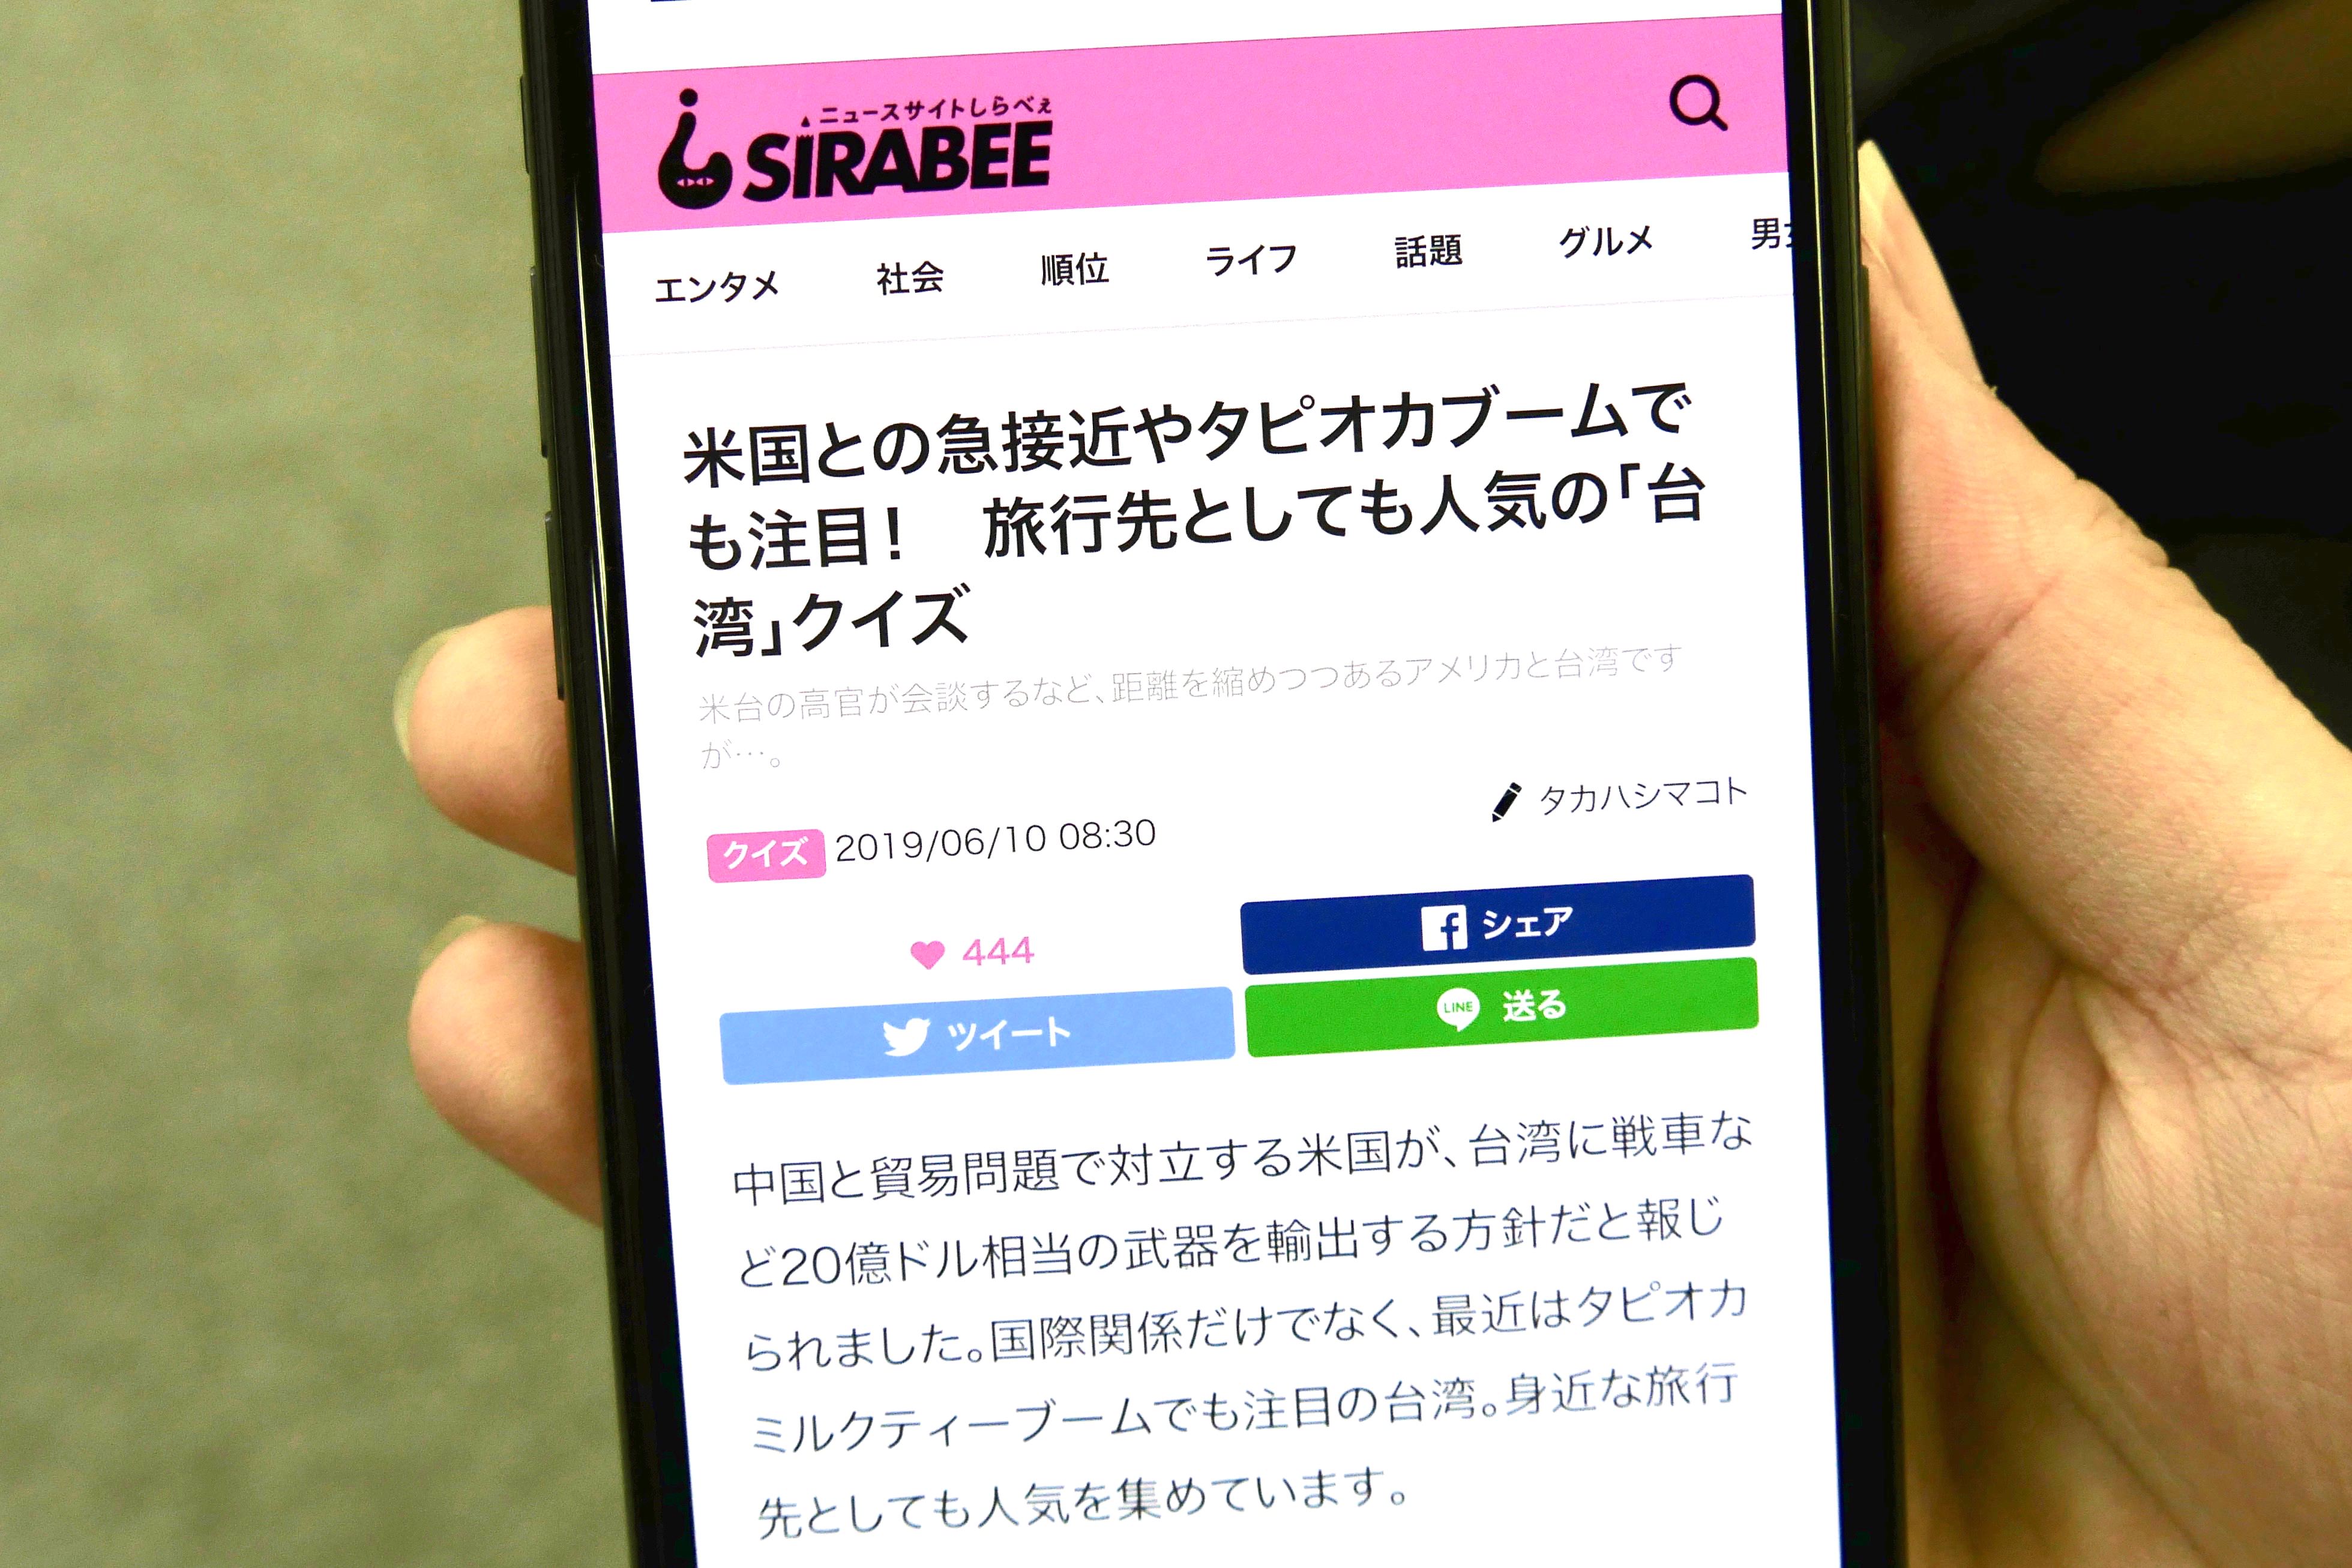 人気アプリ スマートニュース にクイズチャンネル誕生 東大王 や伊沢拓司のコンテンツも ニュースサイトしらべぇ